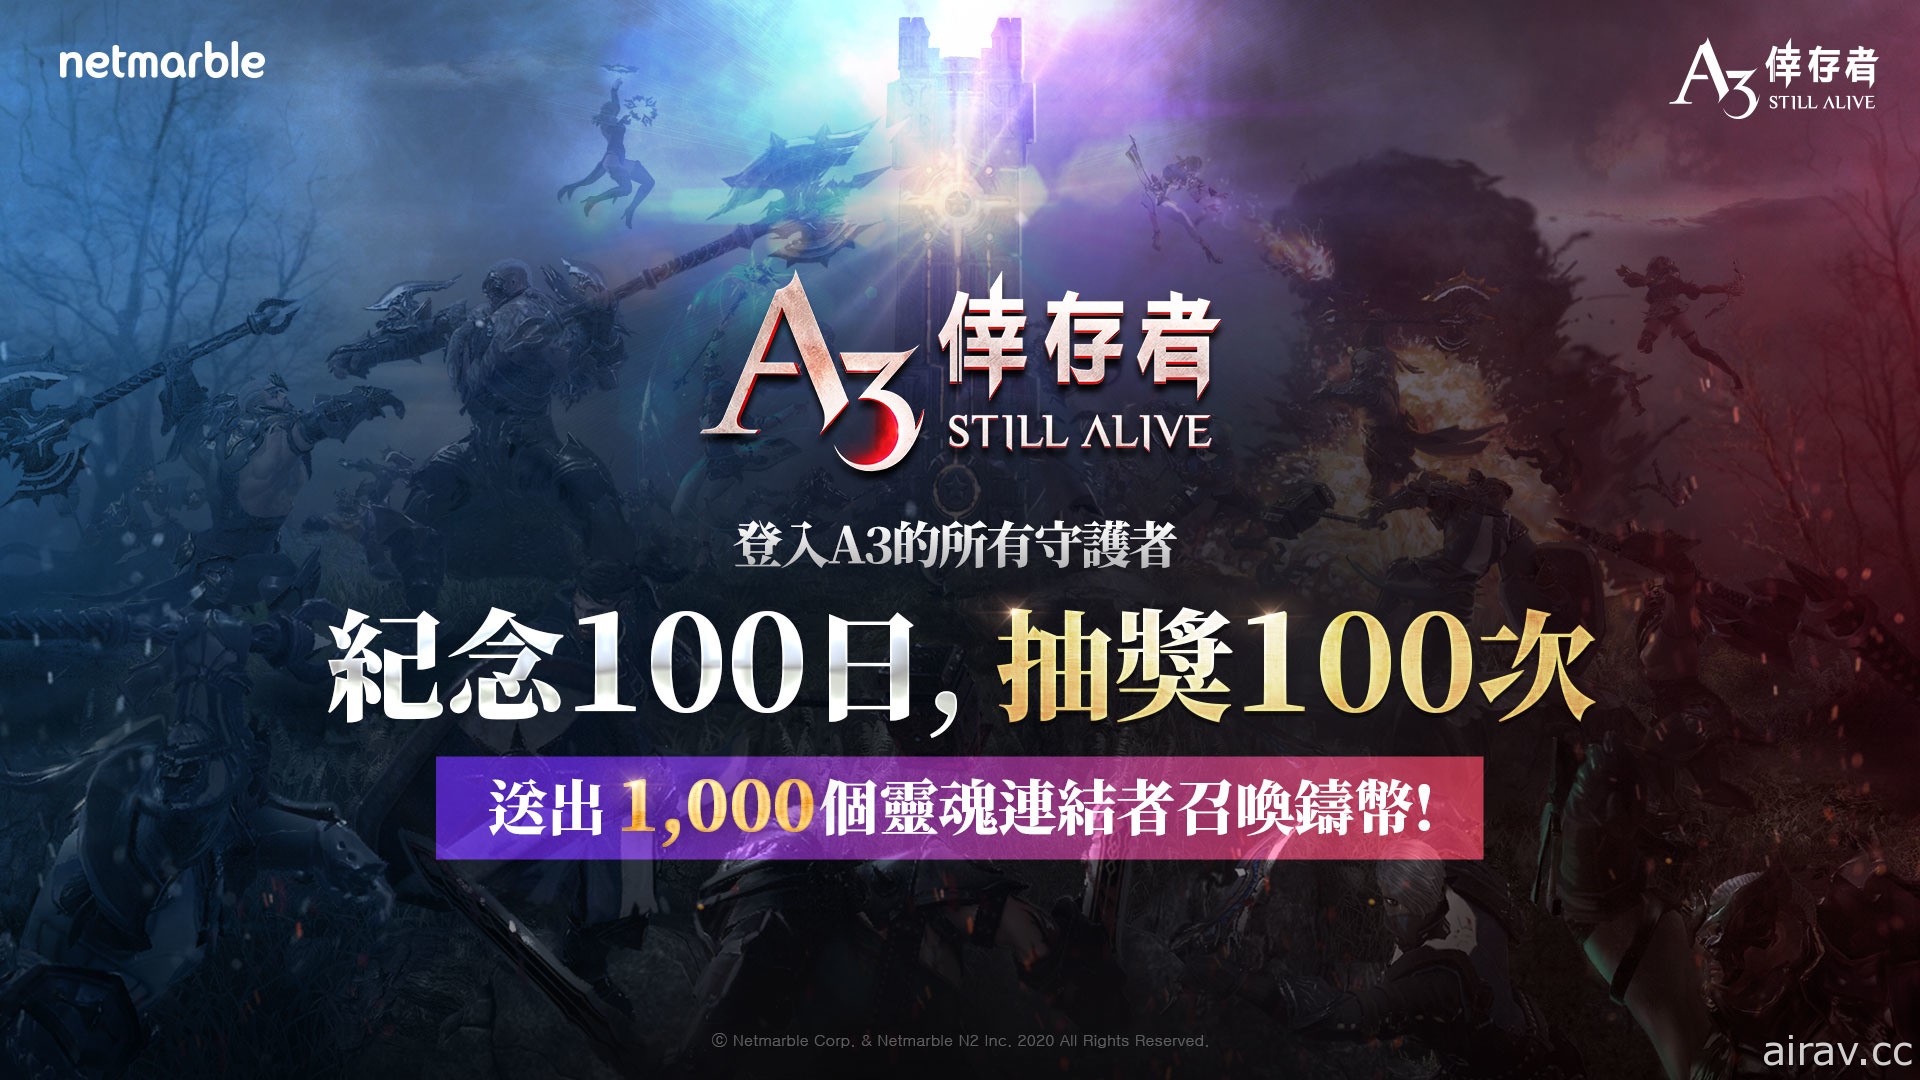 《A3: STILL ALIVE 倖存者》推出開服100 天活動 可獲得 1,000 召喚鑄幣